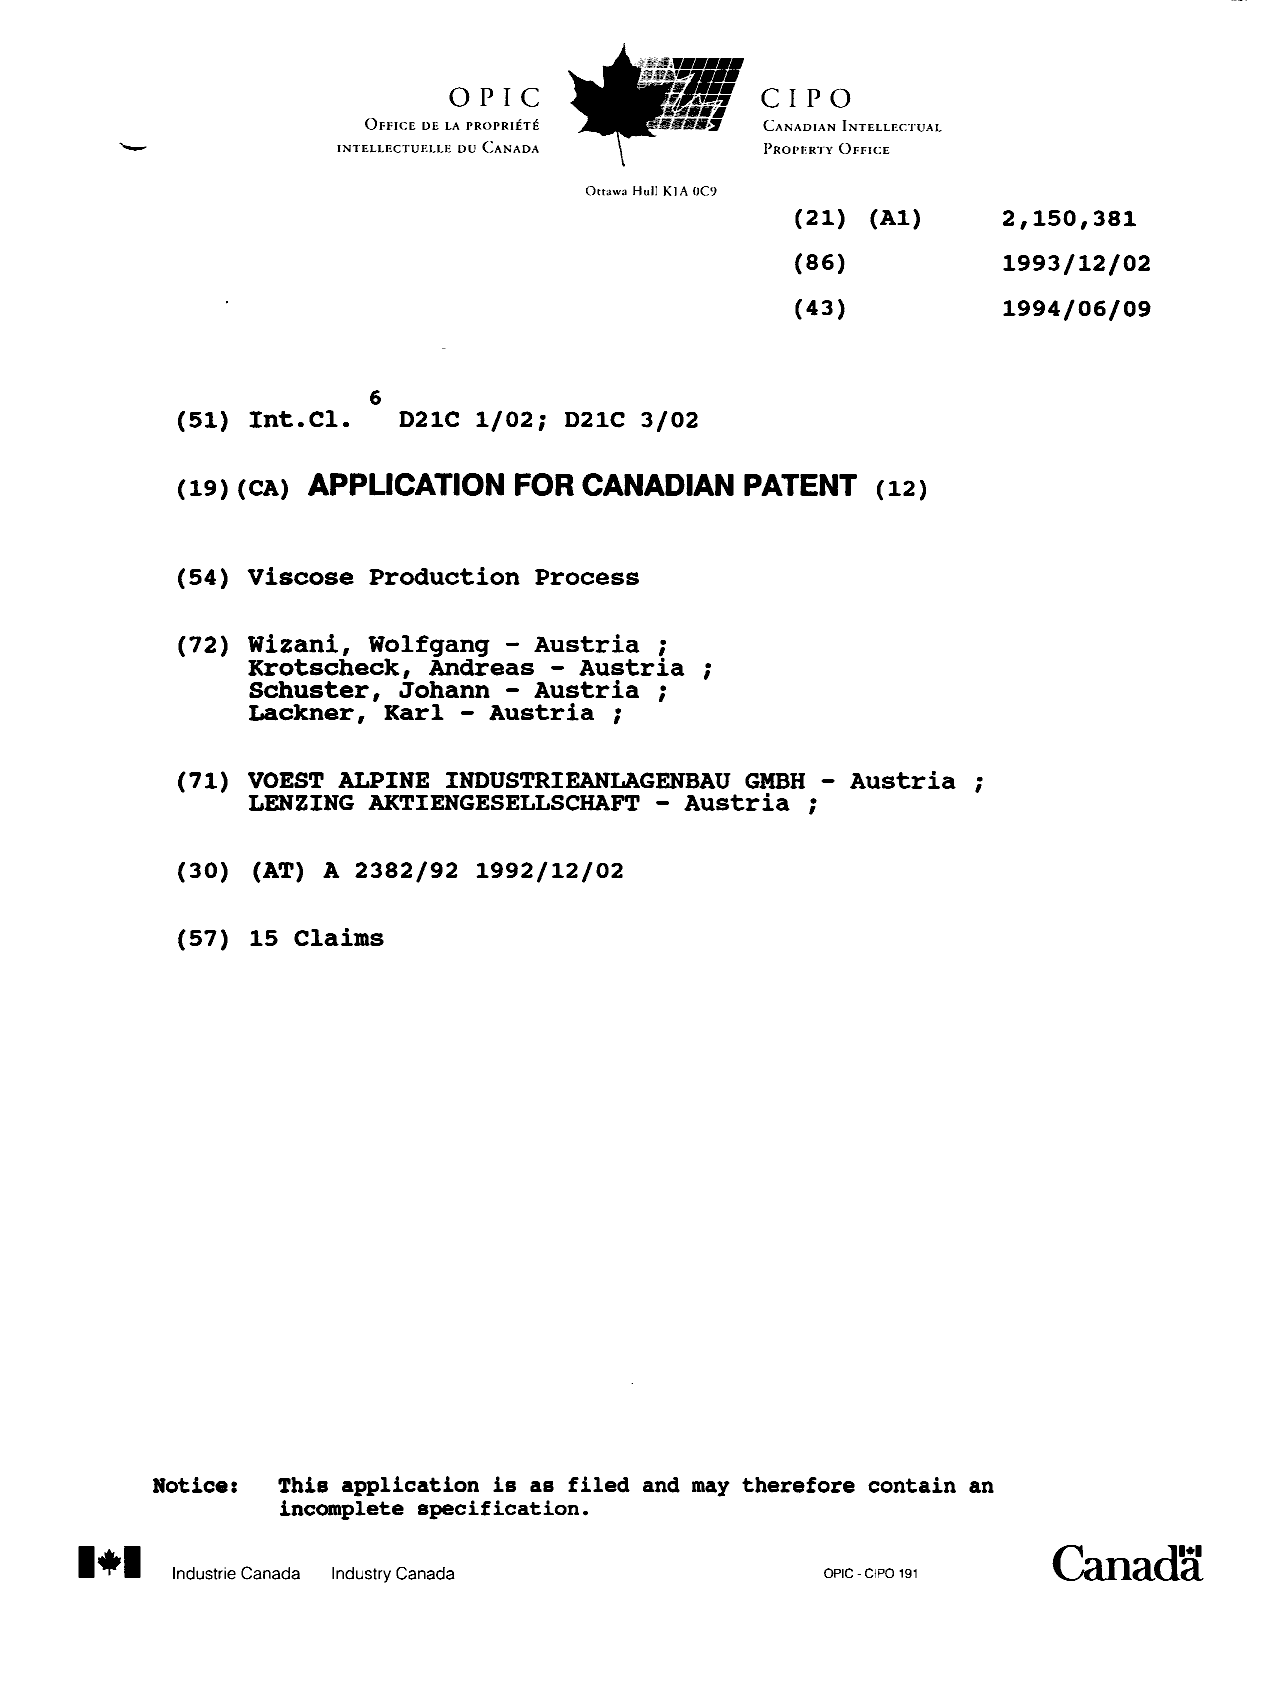 Document de brevet canadien 2150381. Page couverture 19951101. Image 1 de 1